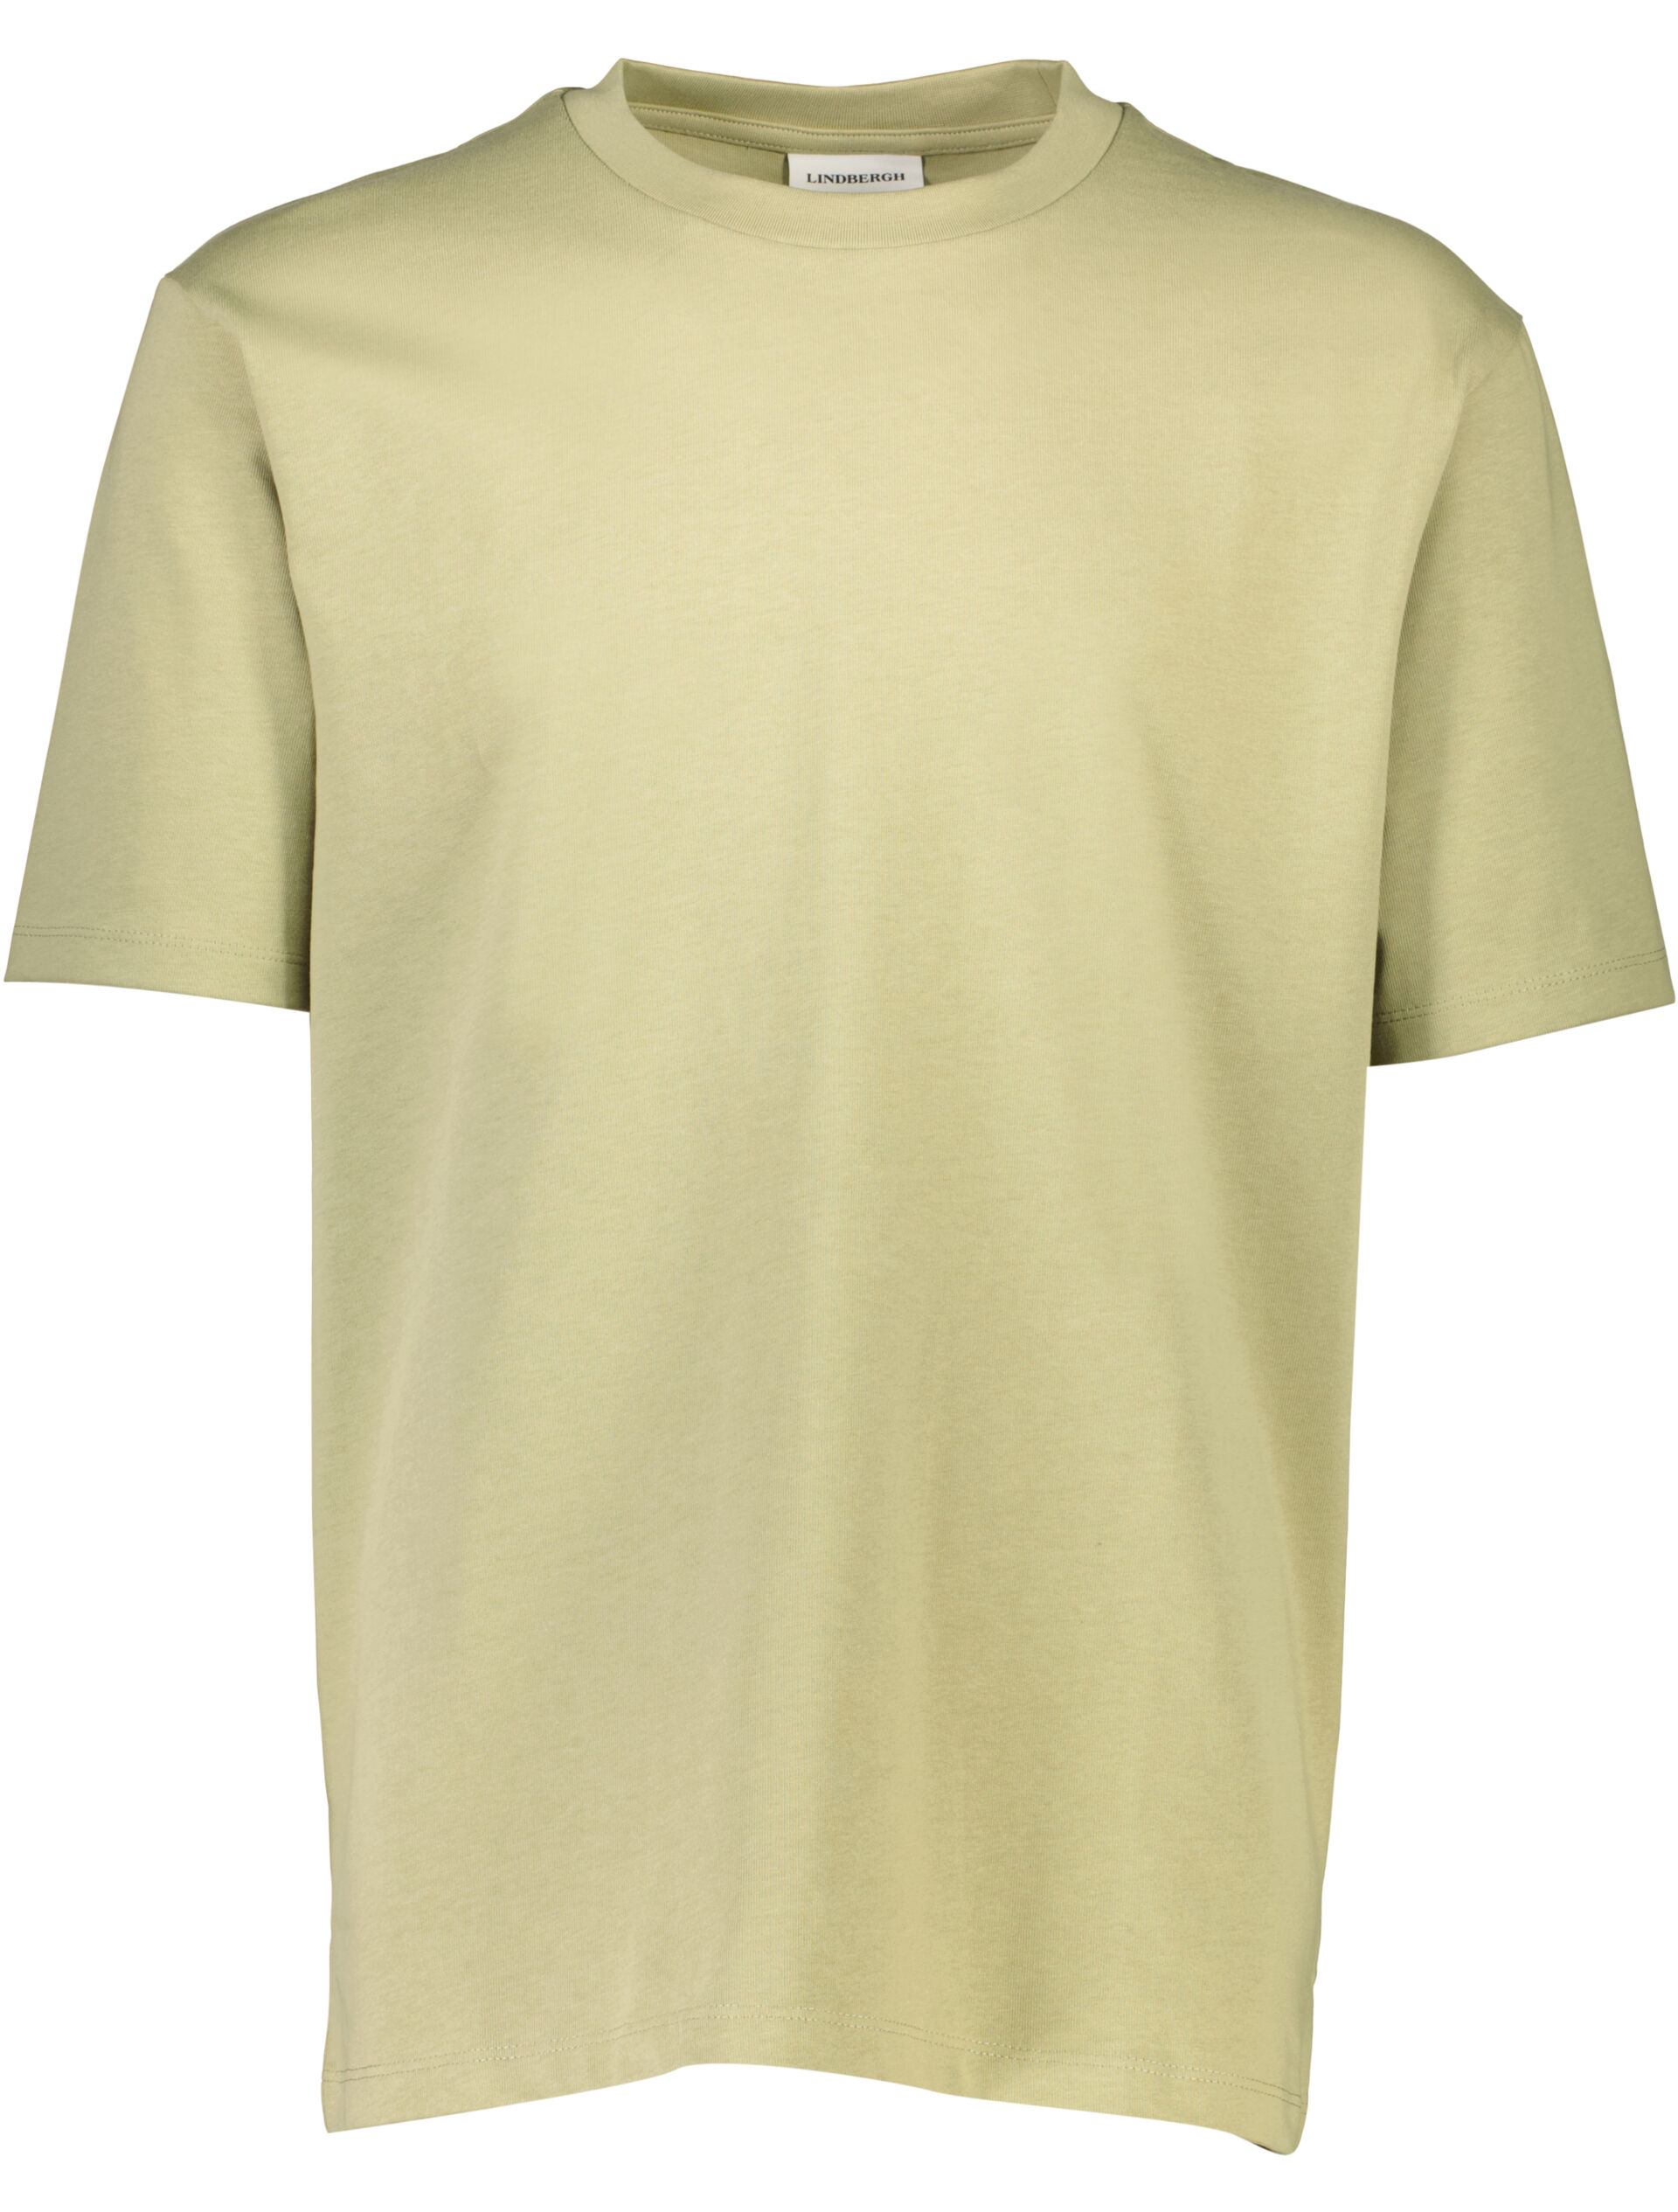 T-shirt T-shirt Grön 30-400120